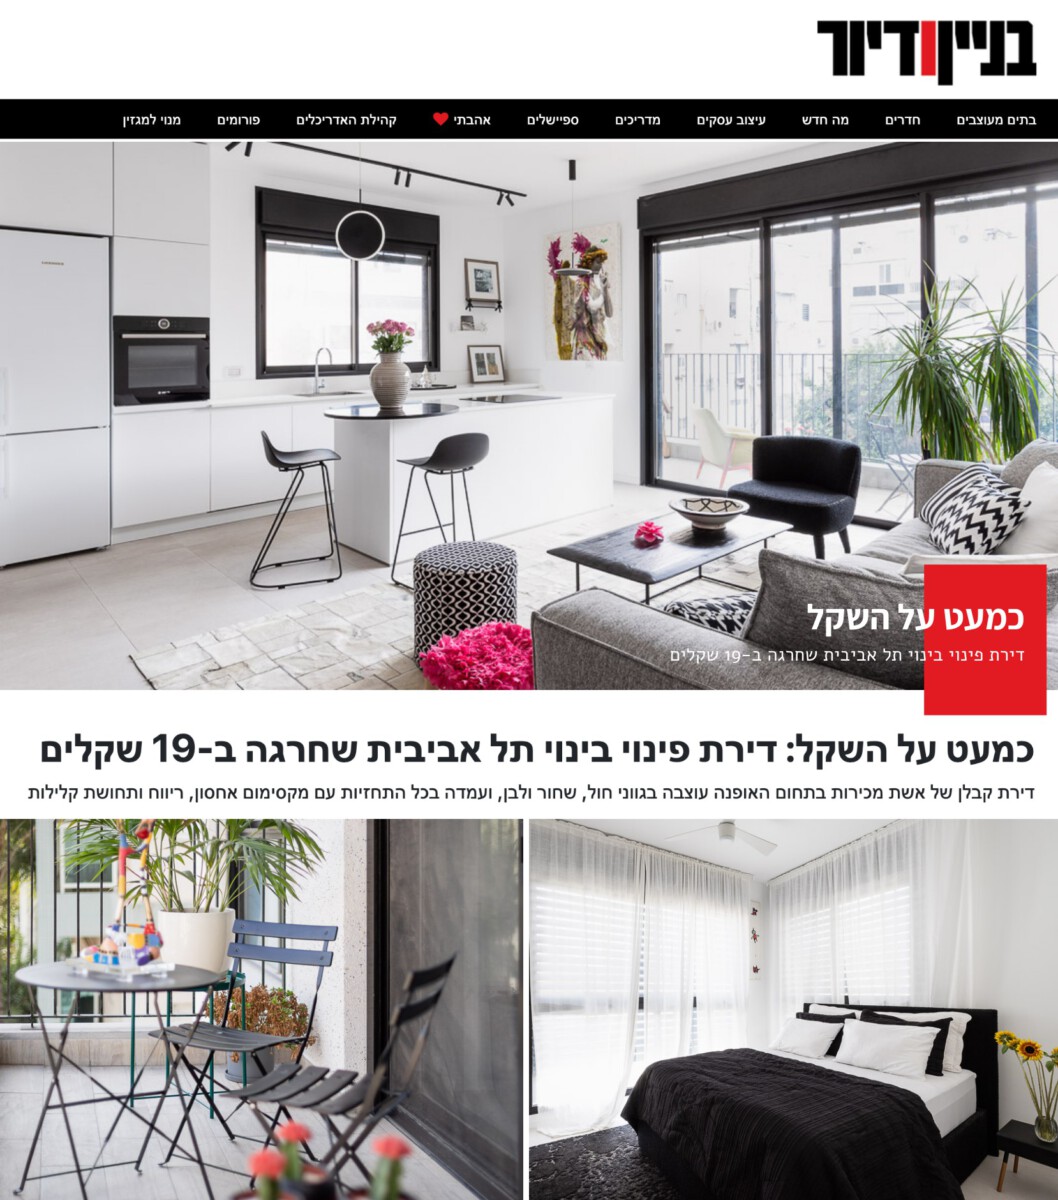 כמעט על השקל דירת פינוי בינוי תל אביבית שחרגה ב-19 שקלים מגזין בניין ודיור